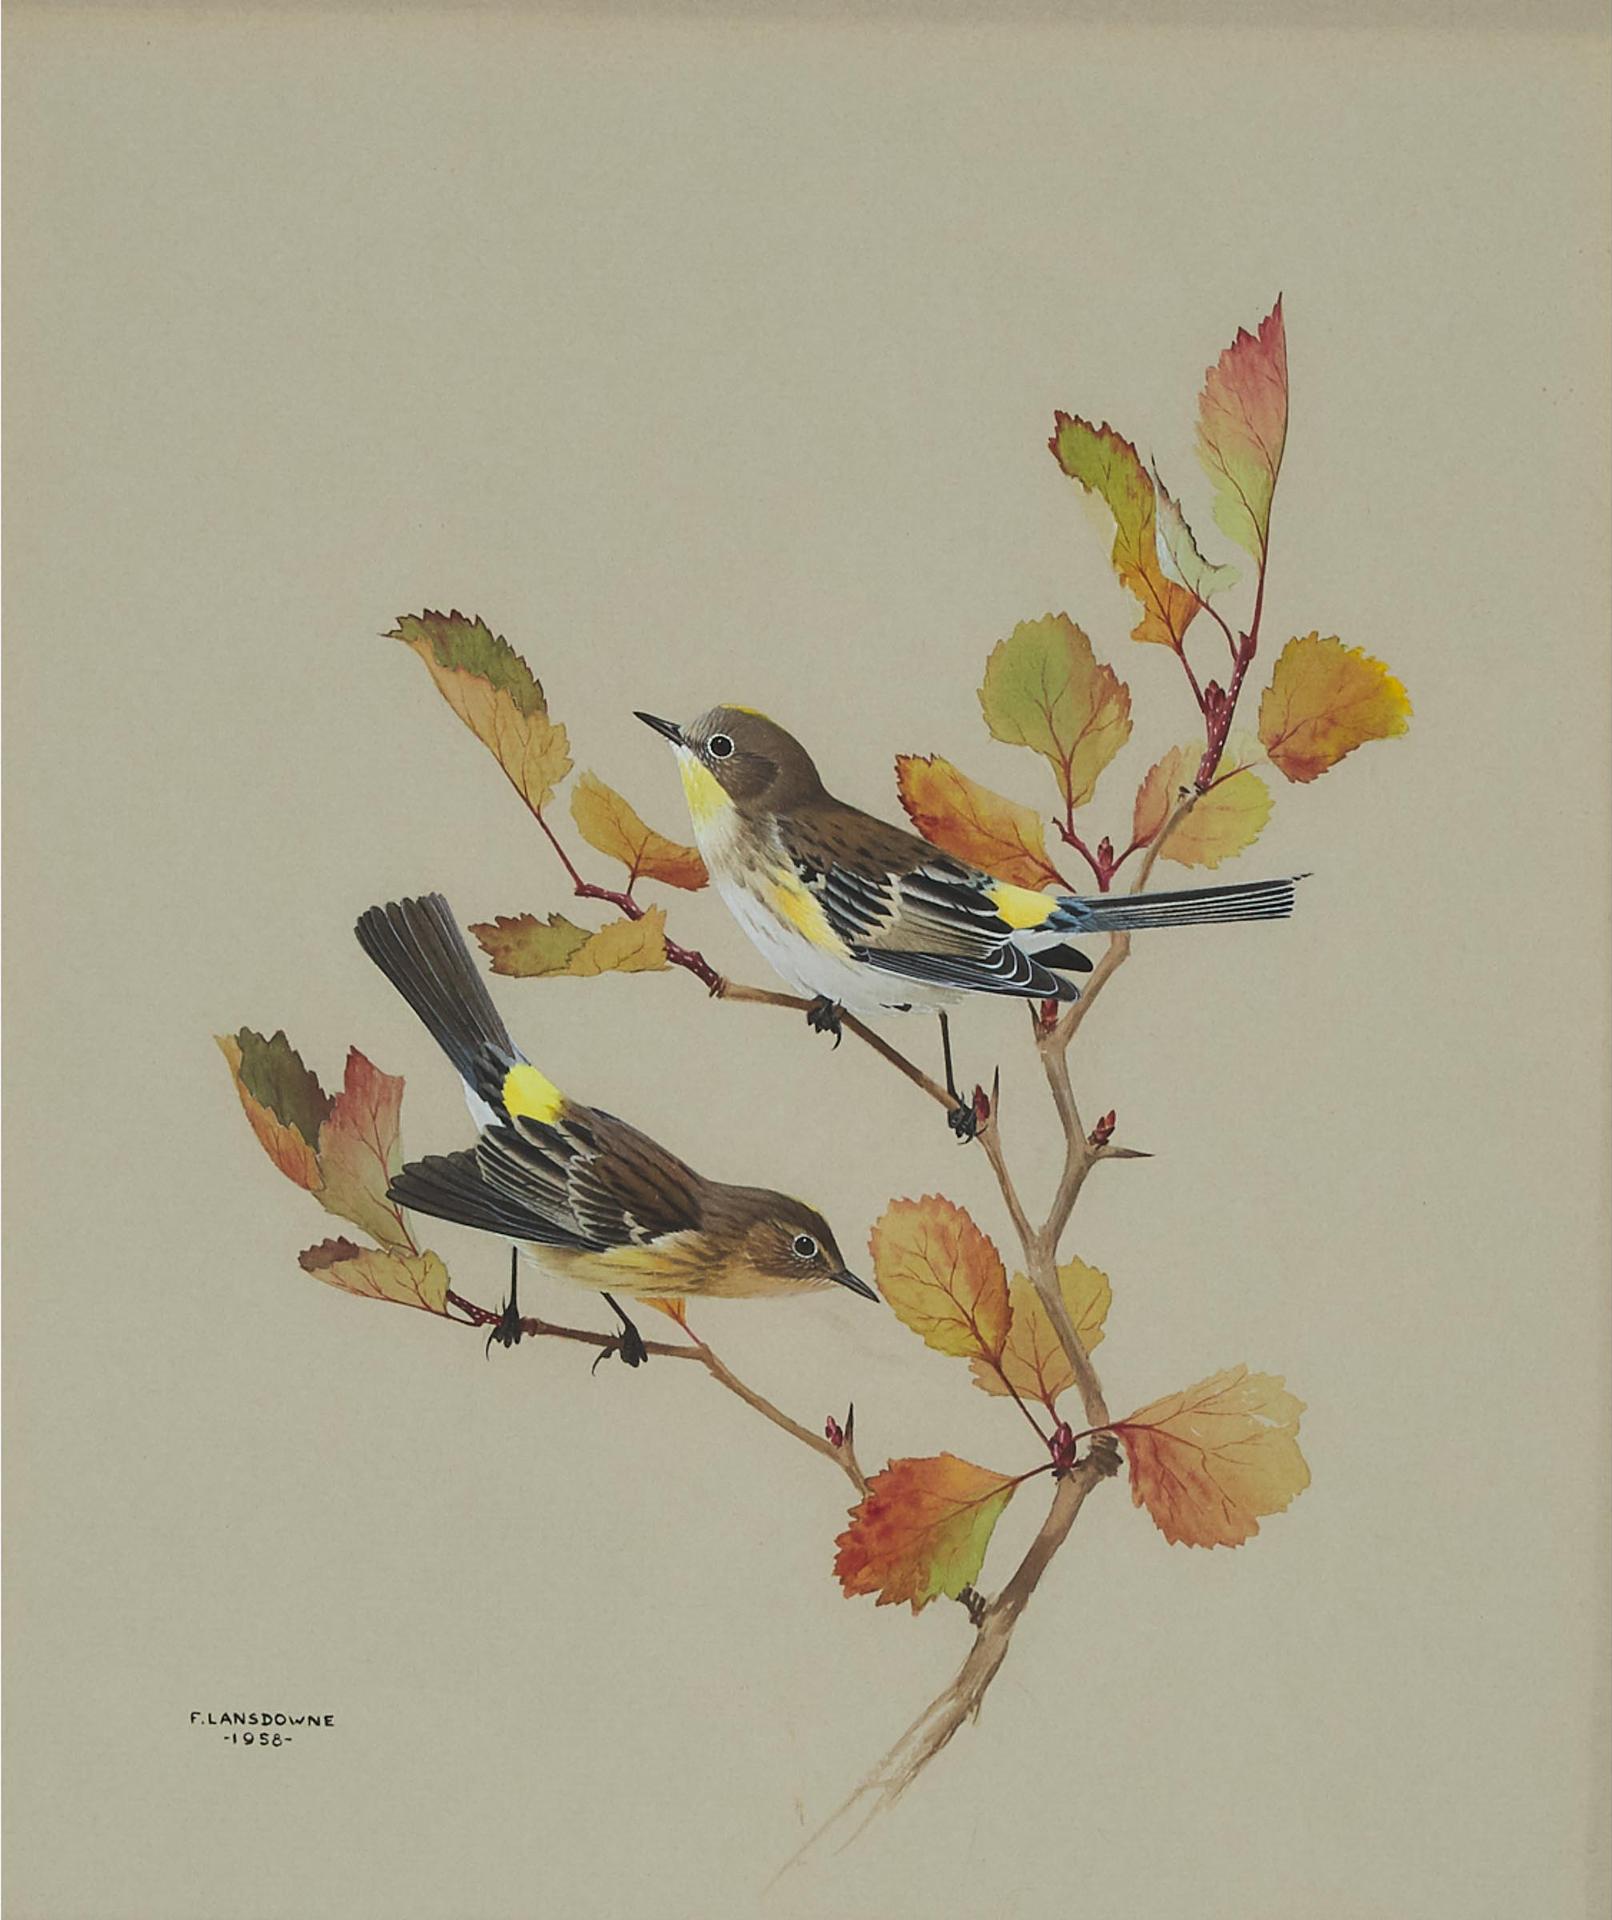 James Fenwick Lansdowne (1937-2008) - Audubon Warbler, 1958